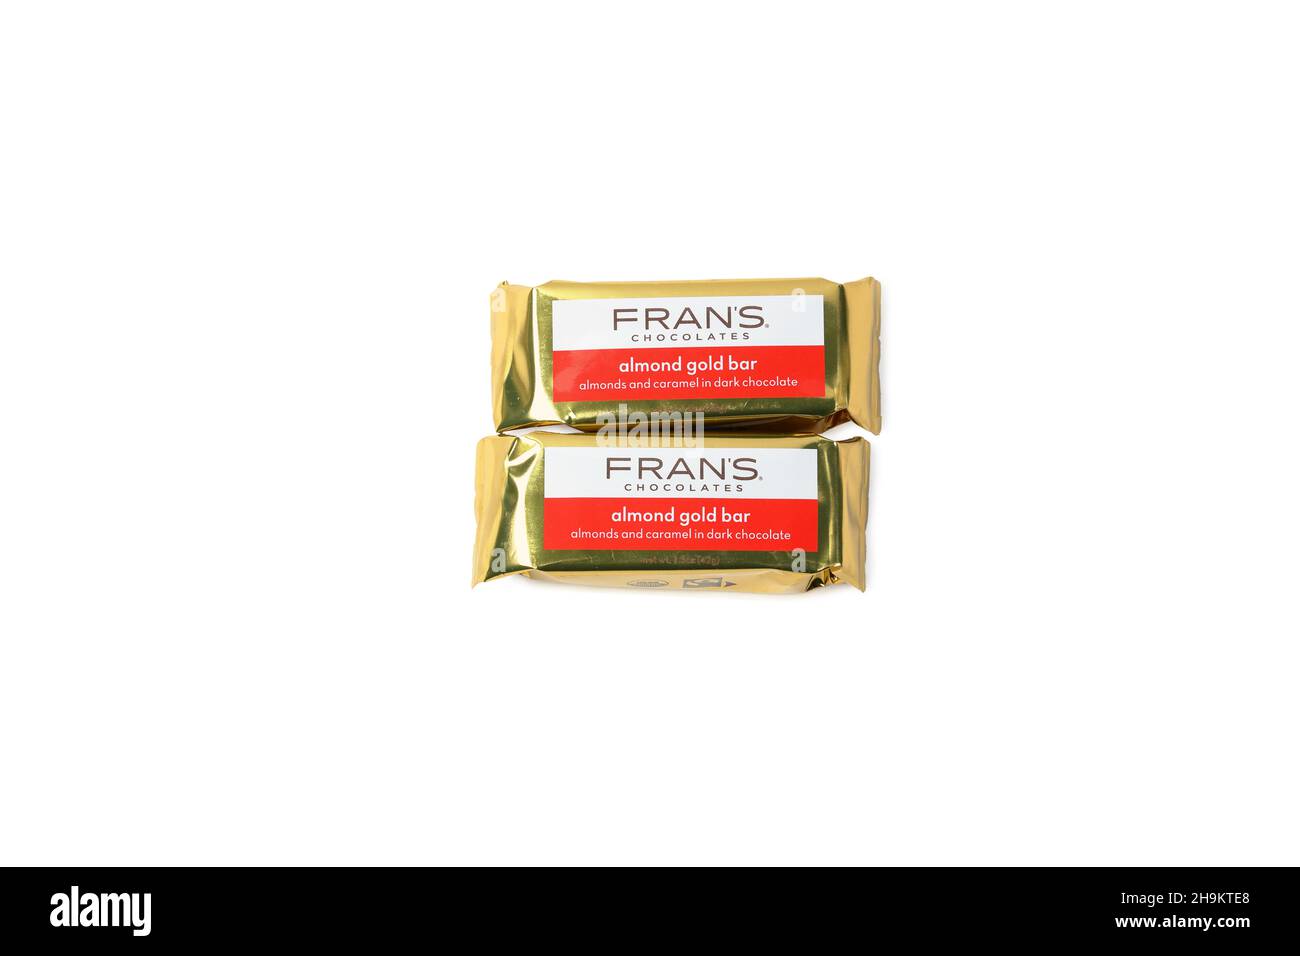 Fran's Chocolates Almond Gold bars isolés sur fond blanc.Amandes et caramel enrobés de chocolat noir. Banque D'Images